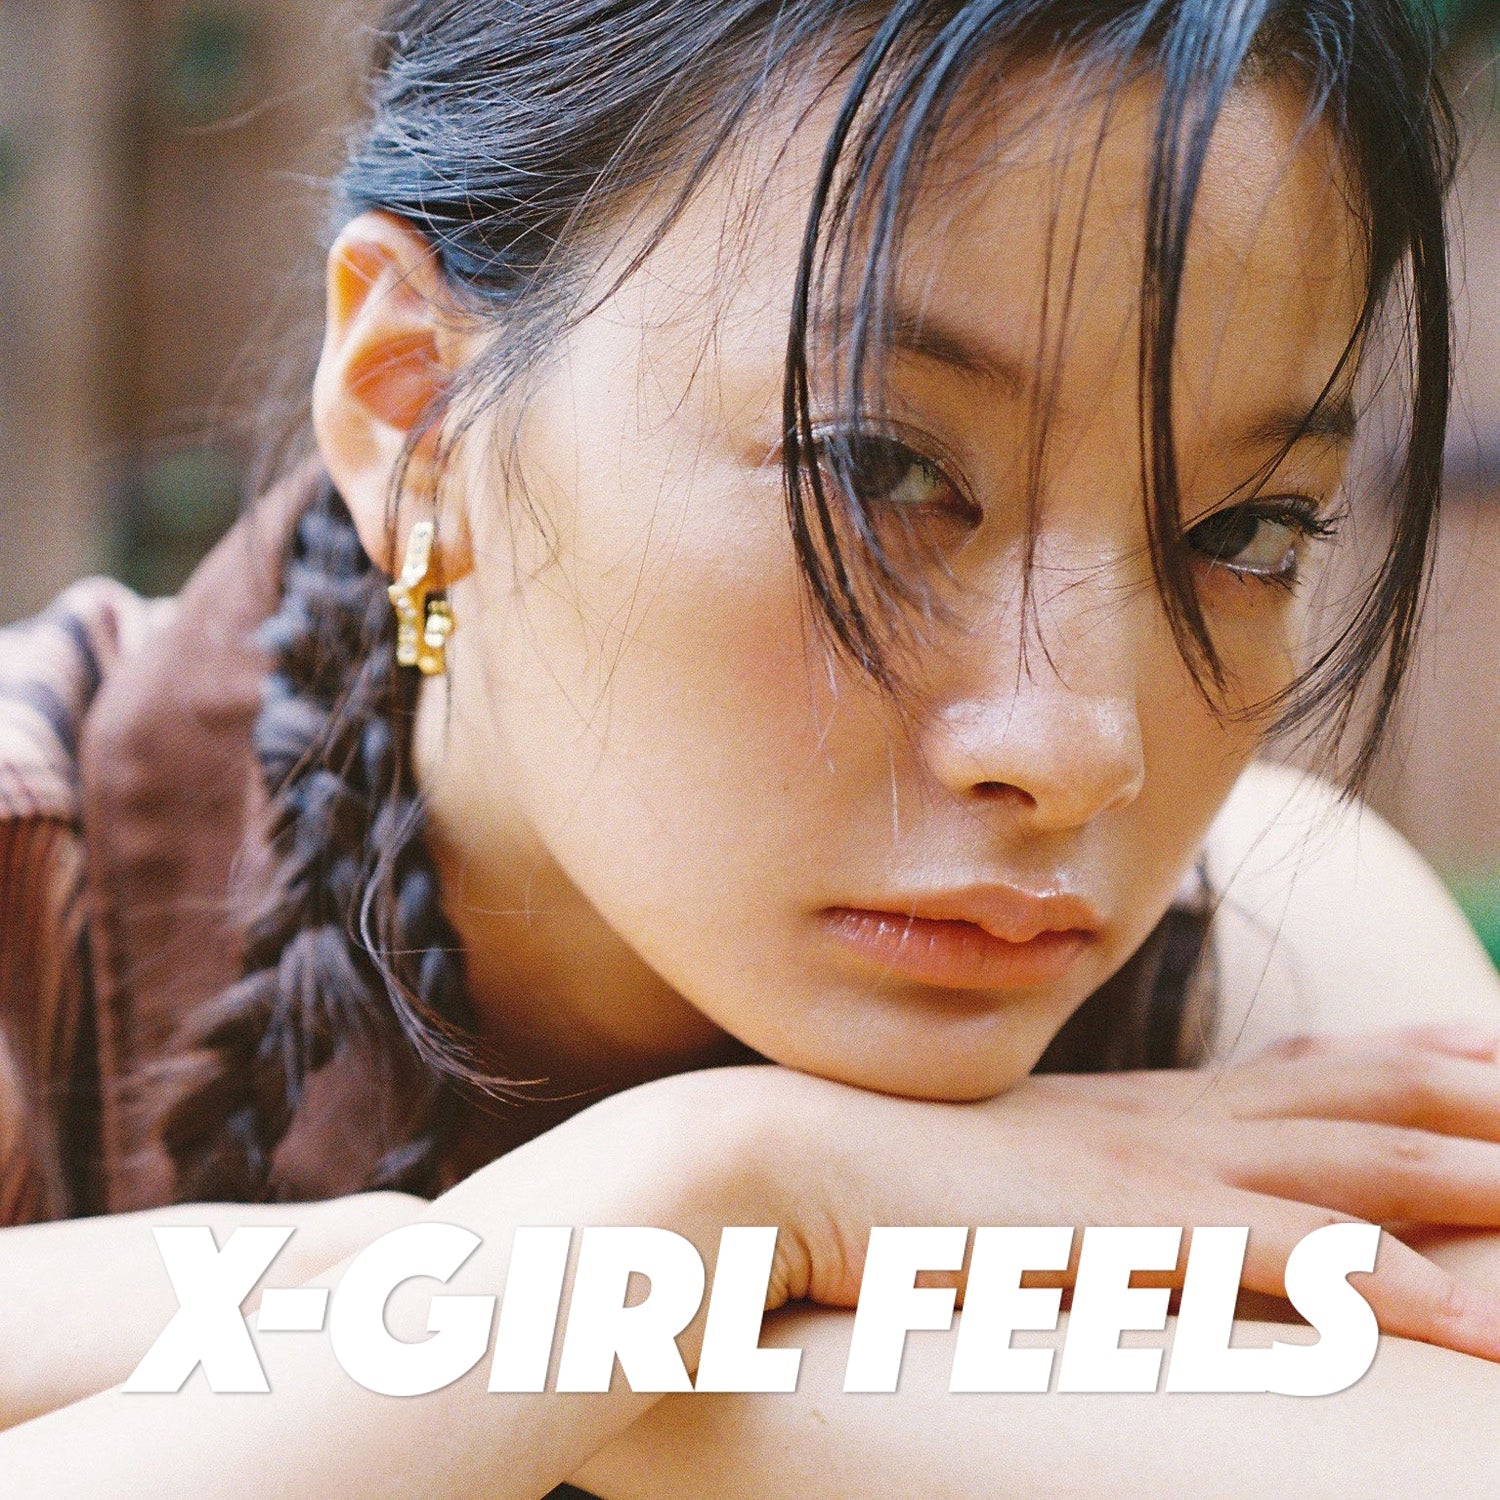 X-girl feels vol.23